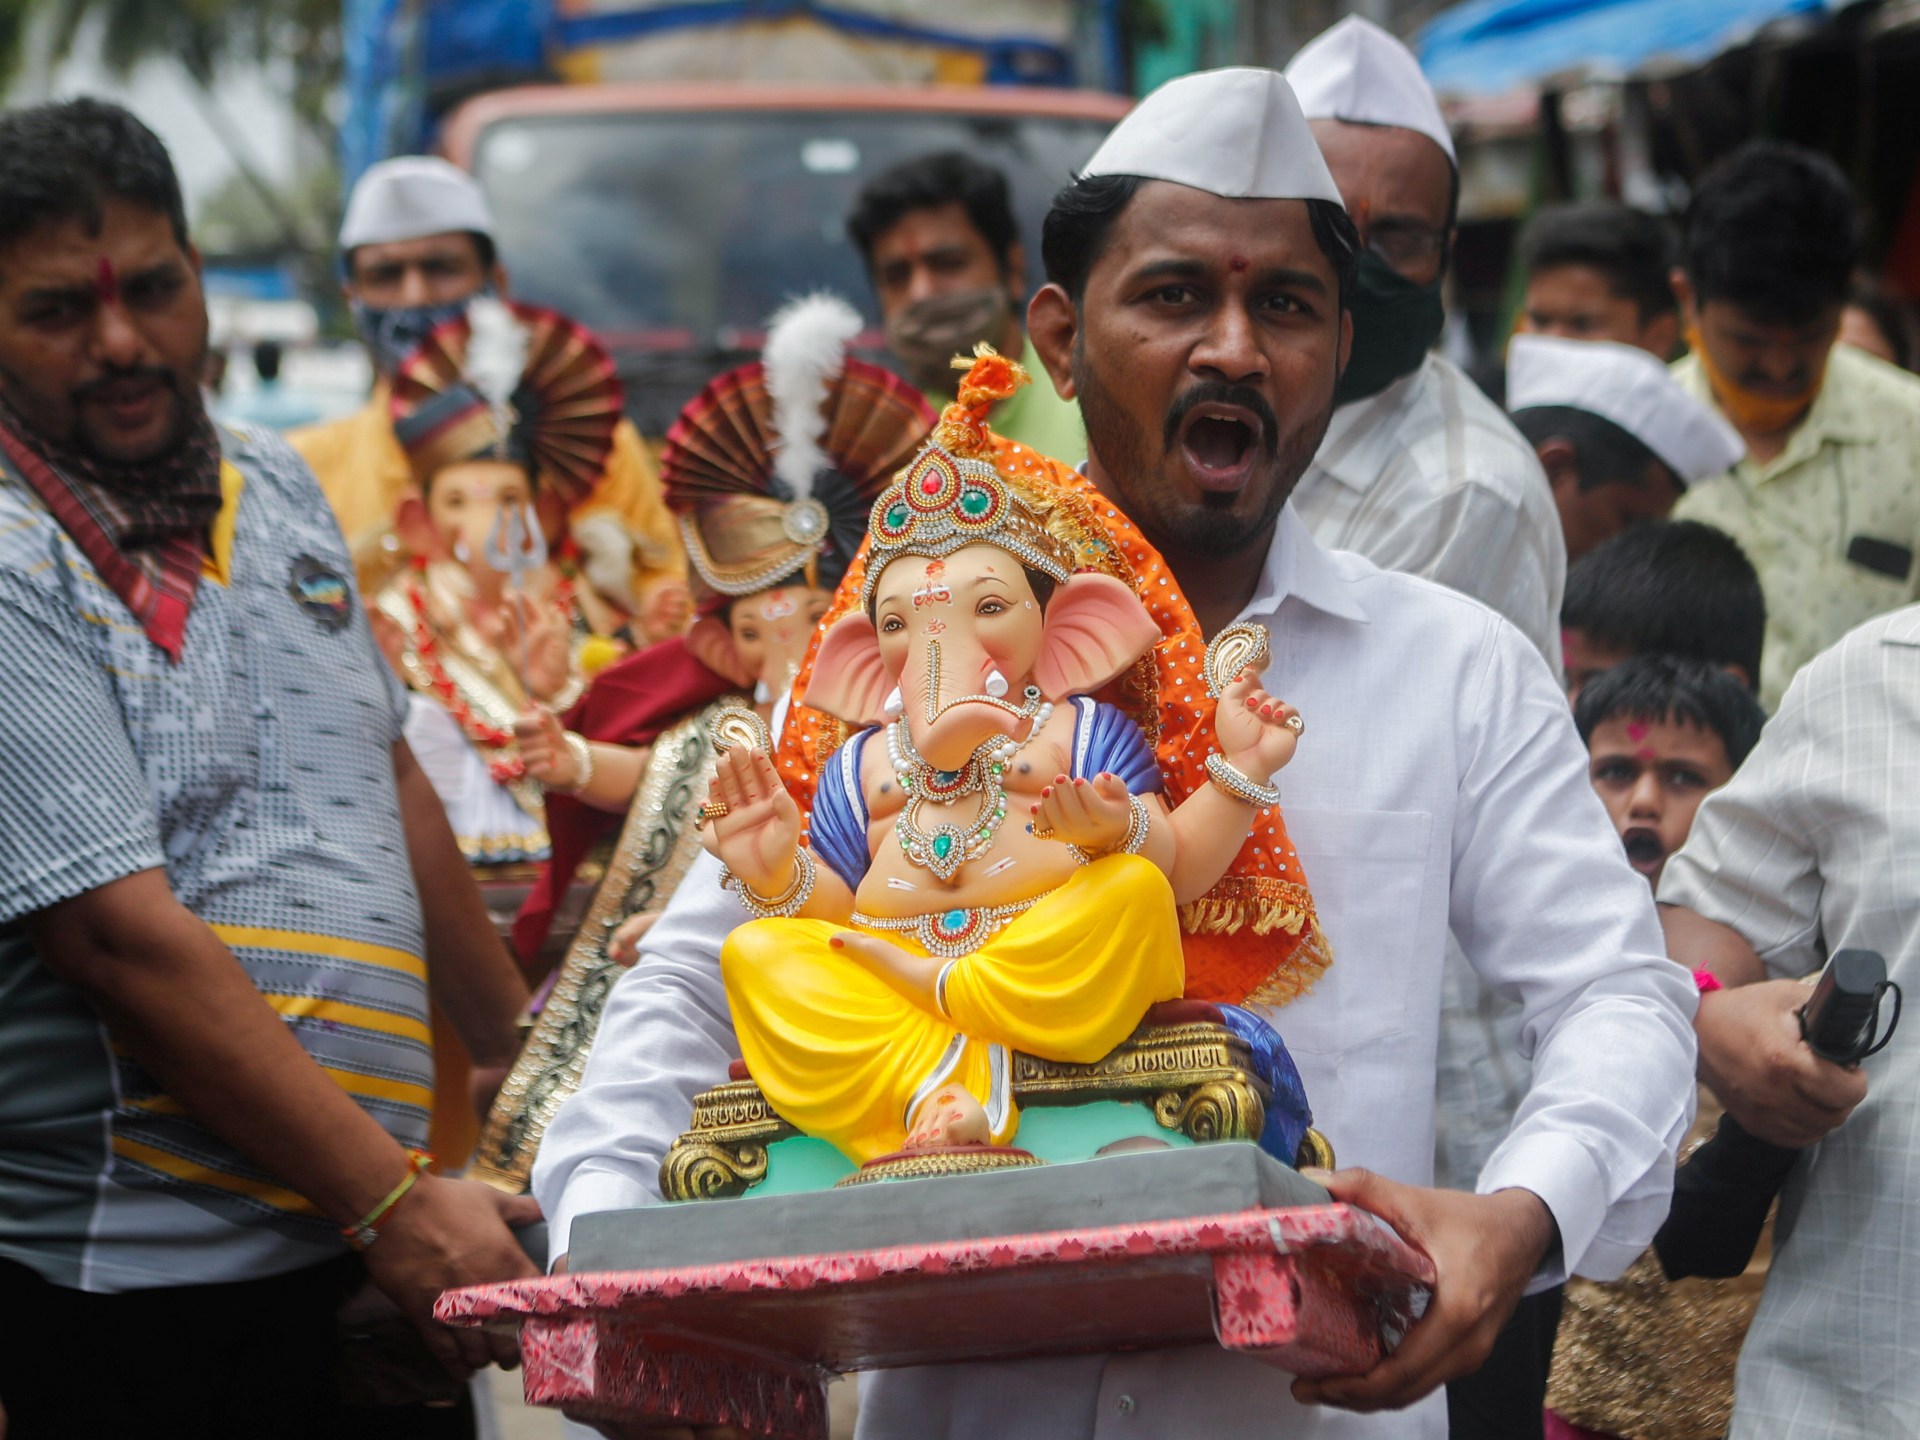 Mumbai imposes curbs on major religious festival amid COVID spike |  Coronavirus pandemic News | Al Jazeera